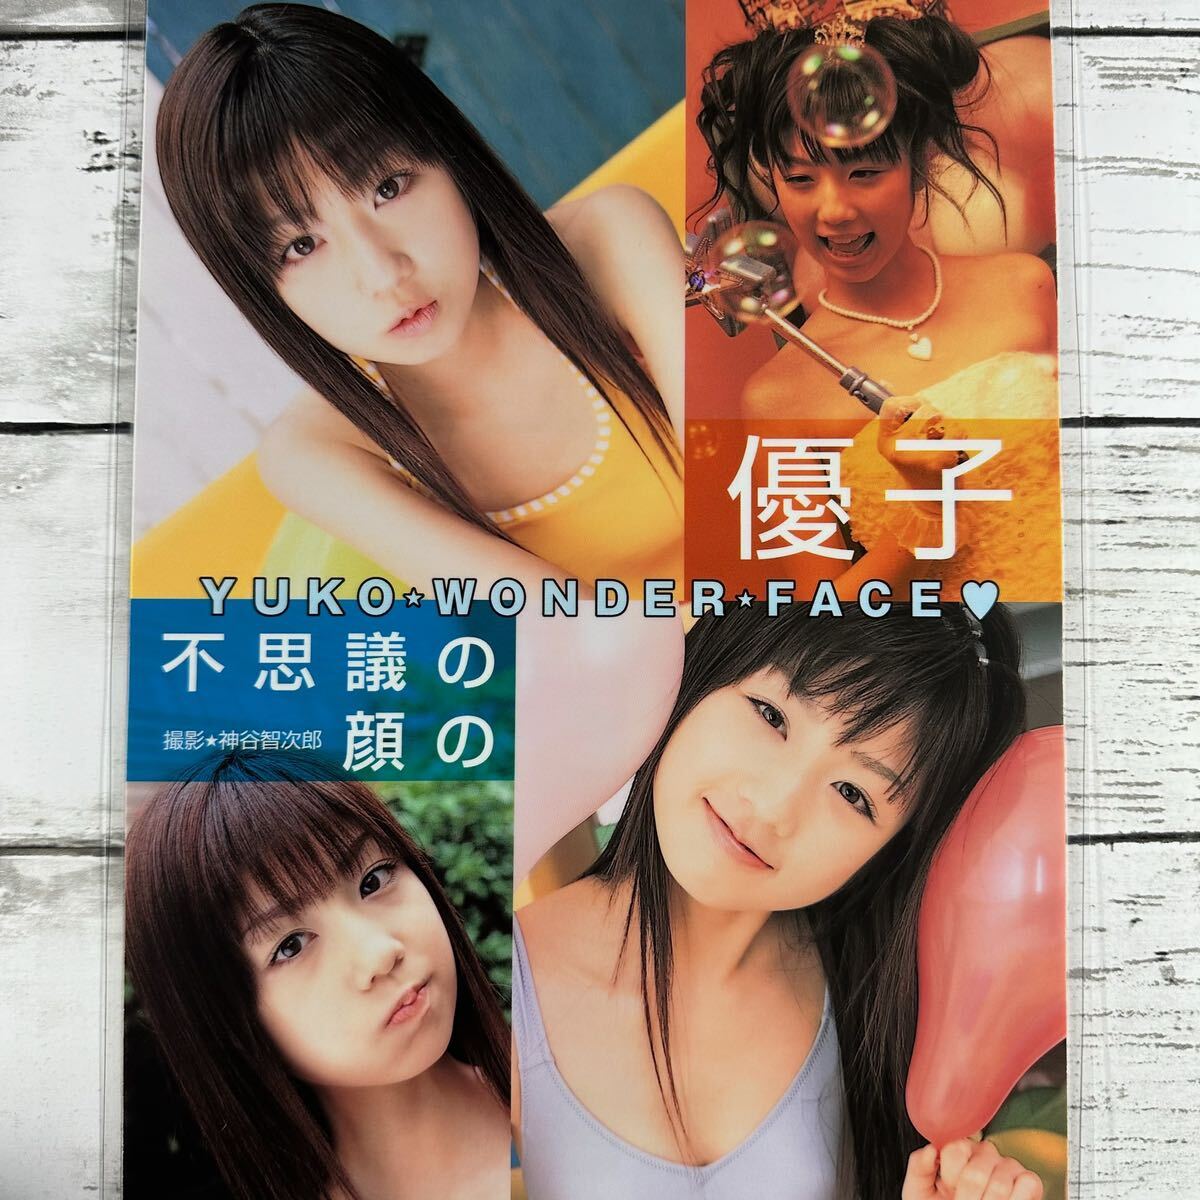 [ высокое качество ламинирование отделка ][ Ogura Yuuko ] Scola 2003 год 9 месяц номер журнал вырезки 4P A4 плёнка купальный костюм bikini model актер женщина super 